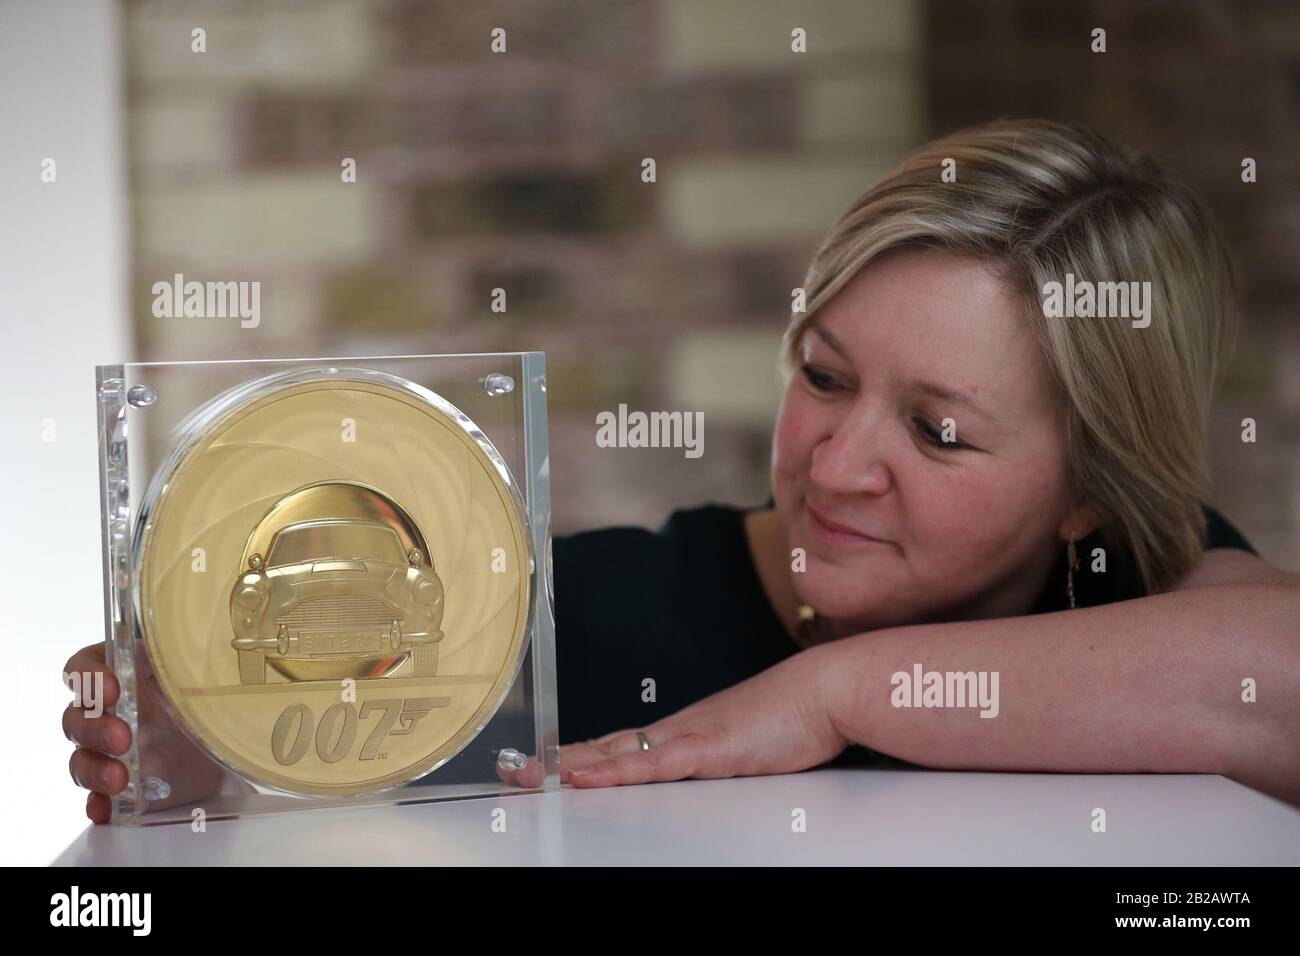 Royal Mint Designerin Laura Clancy, Der eine einzigartige James-Bond-Münze mit 7 Kilo Gold entworfen hat - die größte Münze mit dem höchsten Nominalwert, die in der 1,100-jährigen Geschichte der Münzstätte hergestellt wurde - während der Einführung einer neuen James-Bond-Münze und einer Goldbarren-Kollektion vor der Veröffentlichung des 25. James Bond Film, No Time to die, bei der Bond in Motion Ausstellung im London Film Museum, London. PA-Foto. Bilddatum: Montag, 2. März 2020. Siehe PA Story MONEY Bond. Bildnachweis sollte lauten: Yui Mok/PA Wire Stockfoto